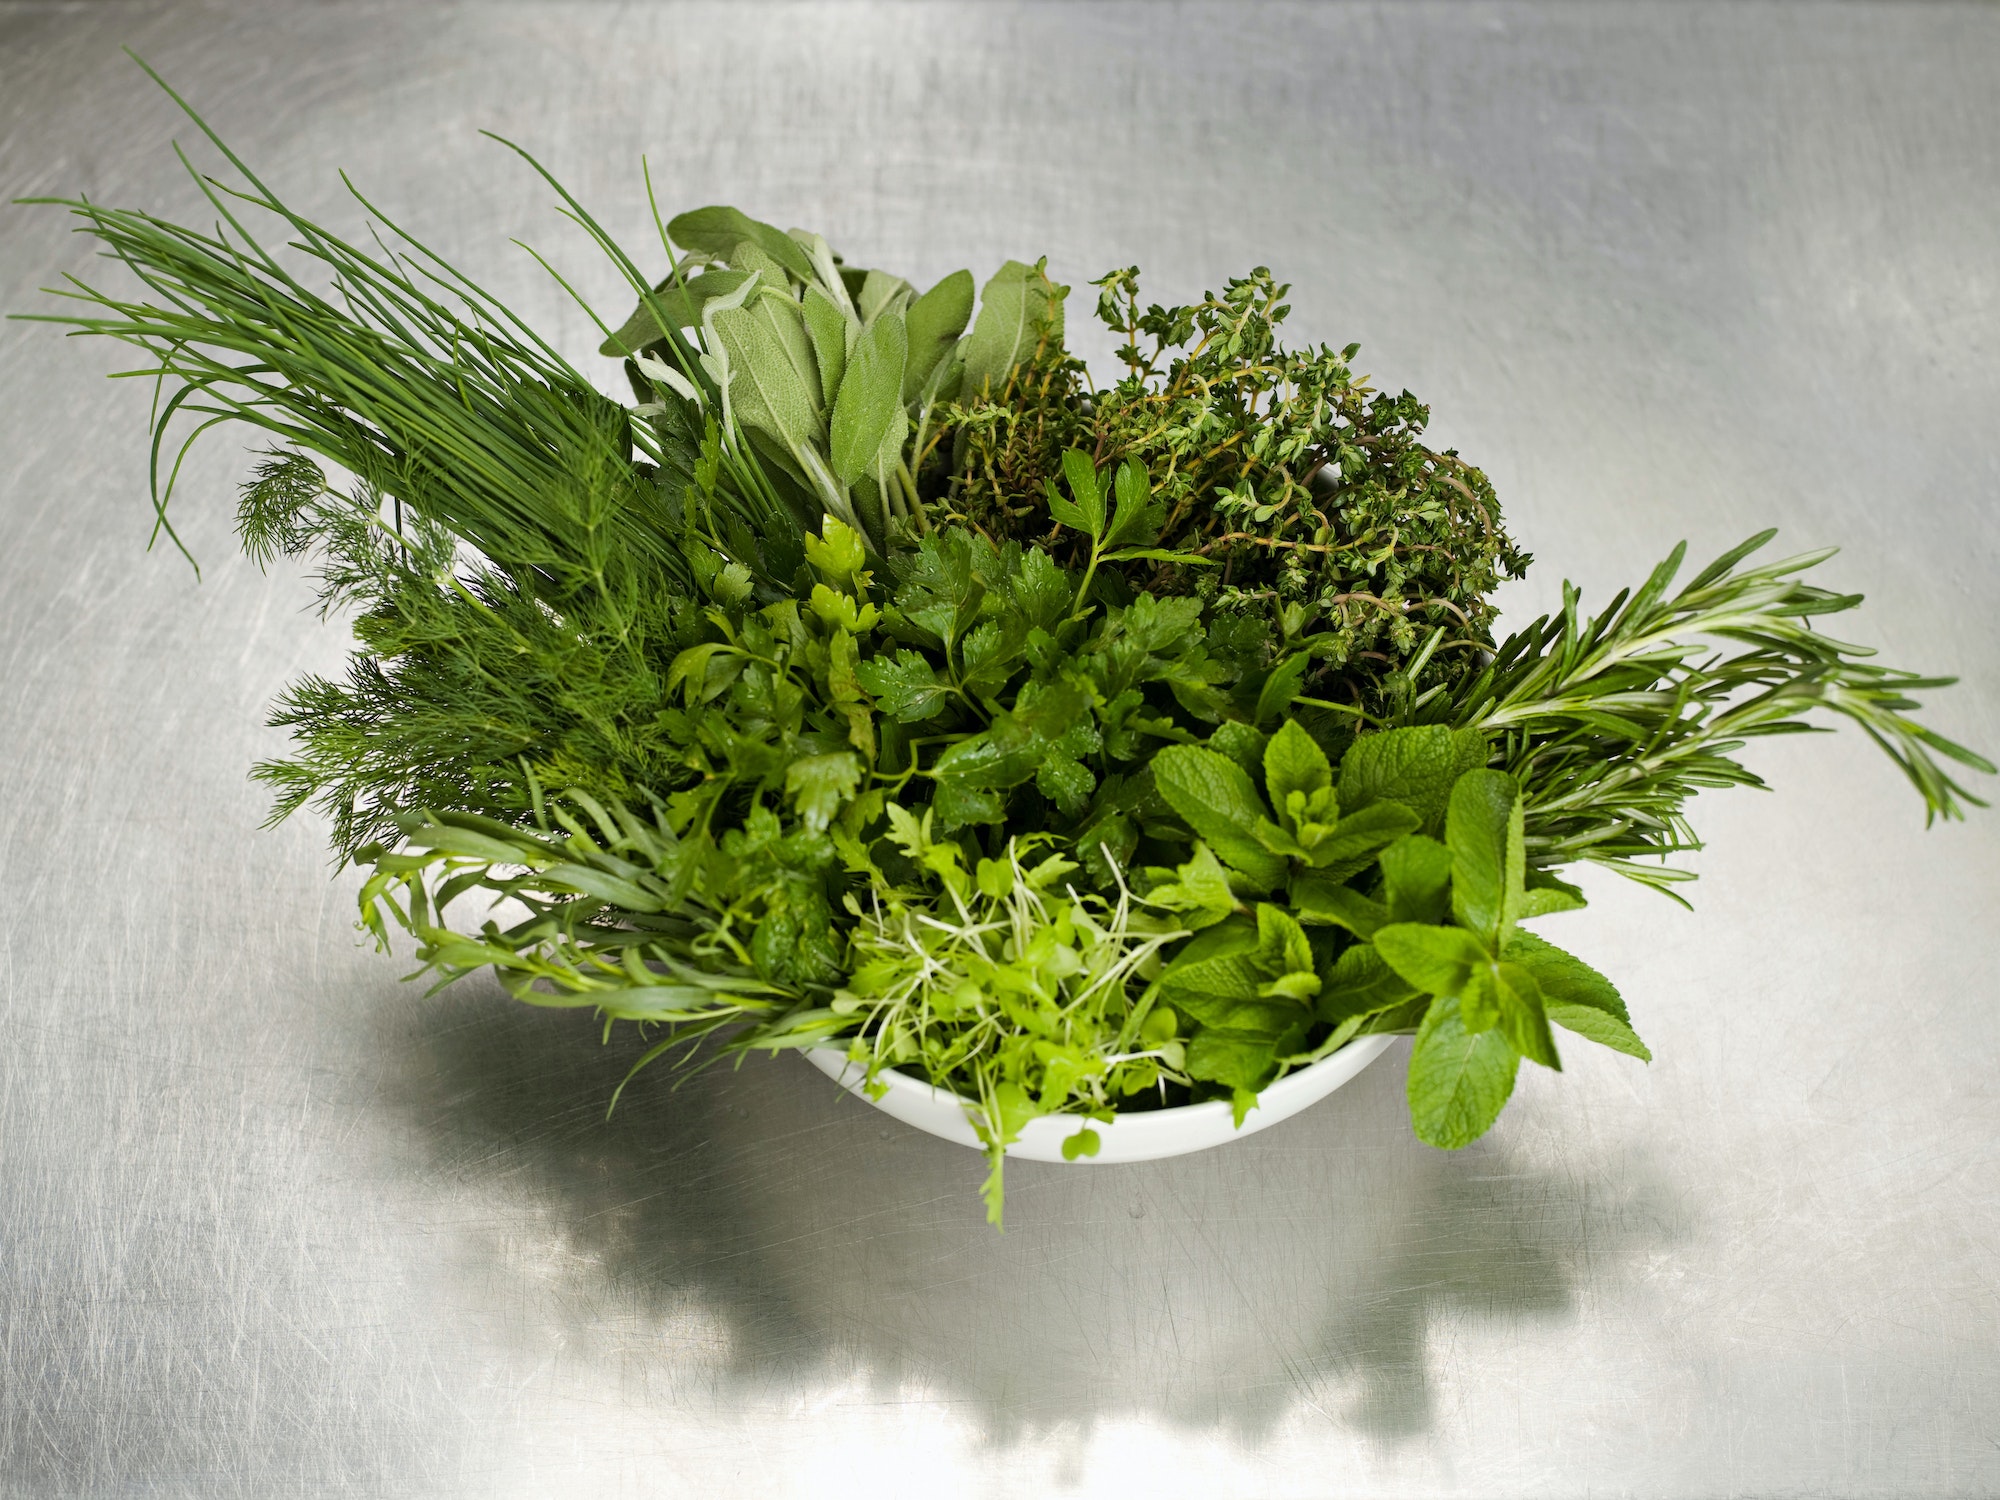 A bowl of fresh herbs